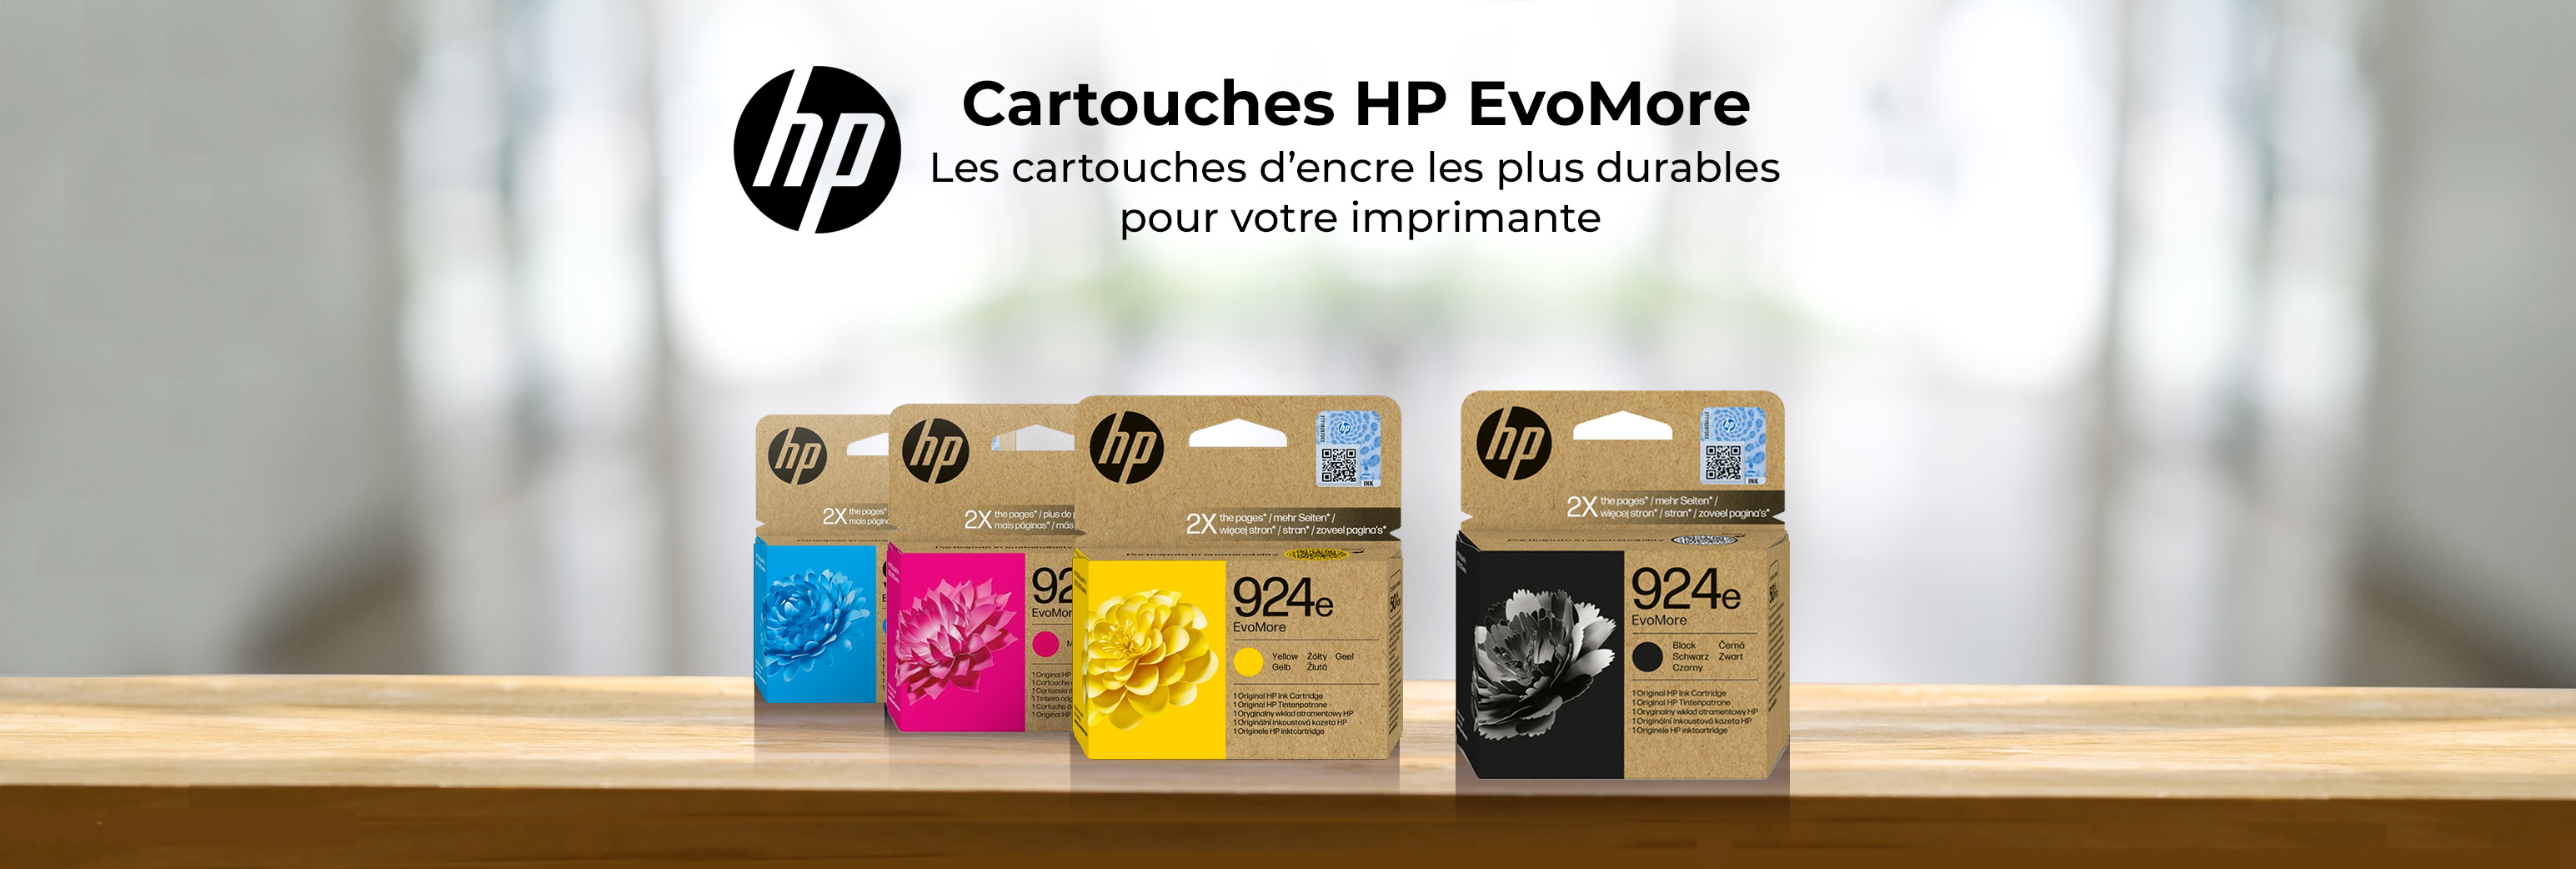 EvoMore d'HP : quand durabilité rime avec cartouches d'encre